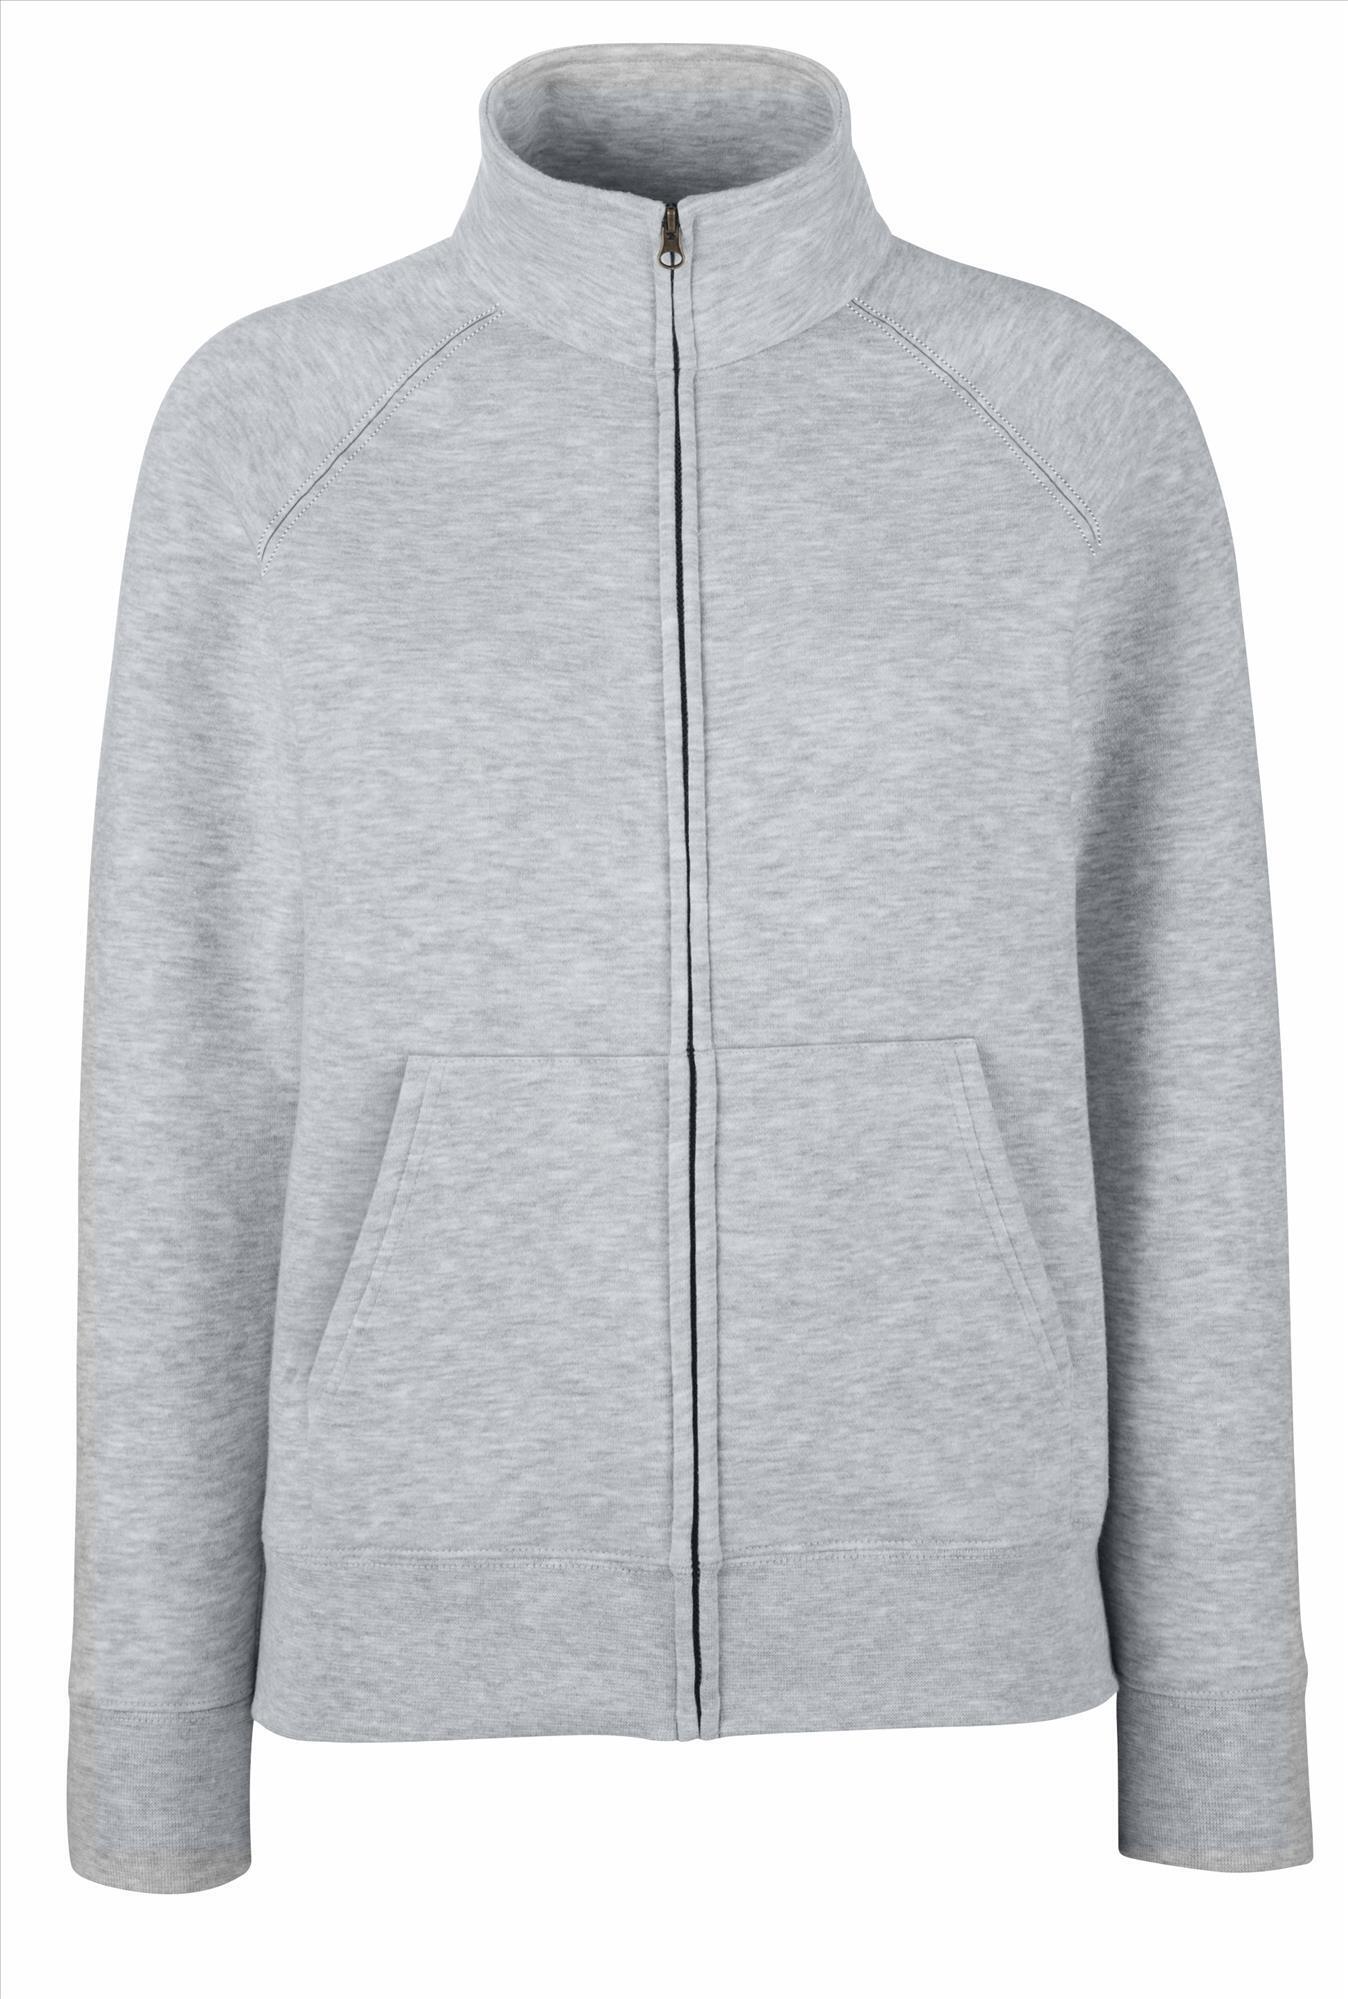 Dames sweater heide grijs personaliseren mogelijk